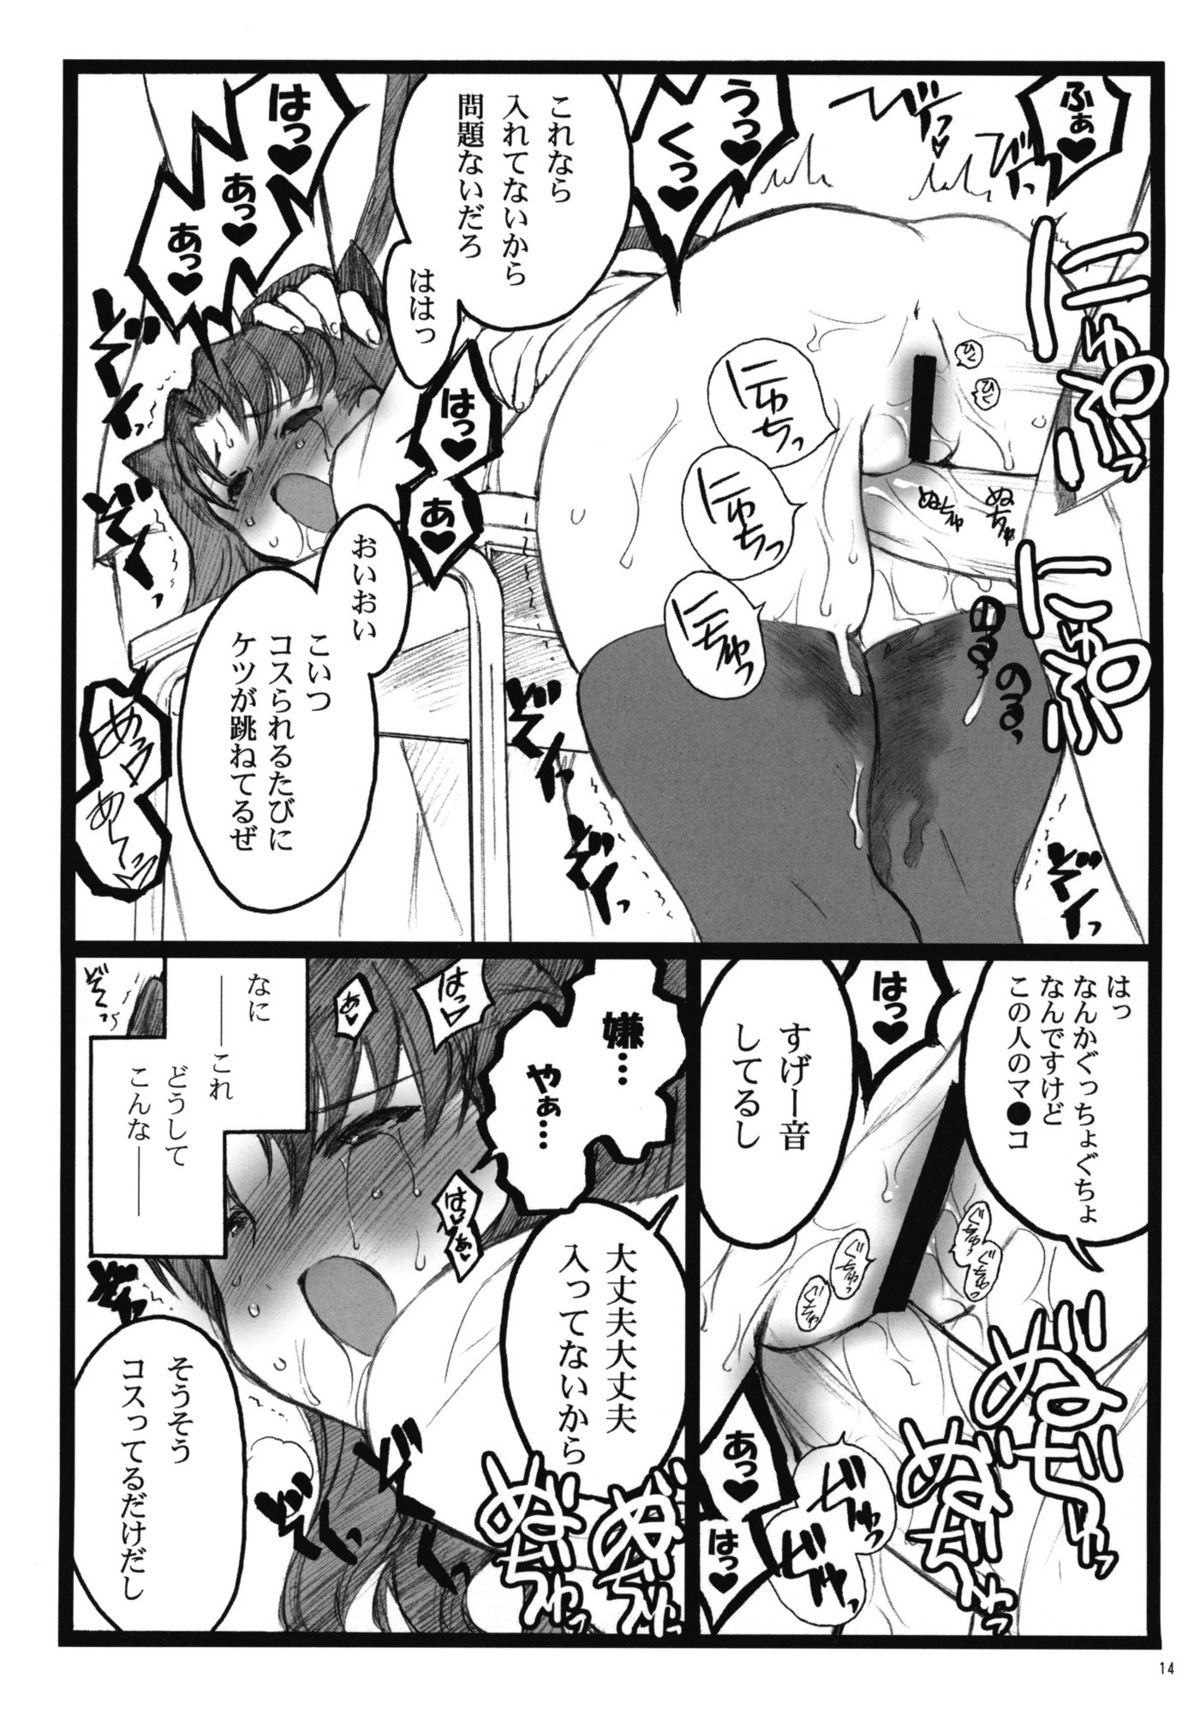 (COMIC1☆4) [Keumaya (Inoue Junichi)] Walpurgisnacht 4 (Fate / stay night) page 13 full